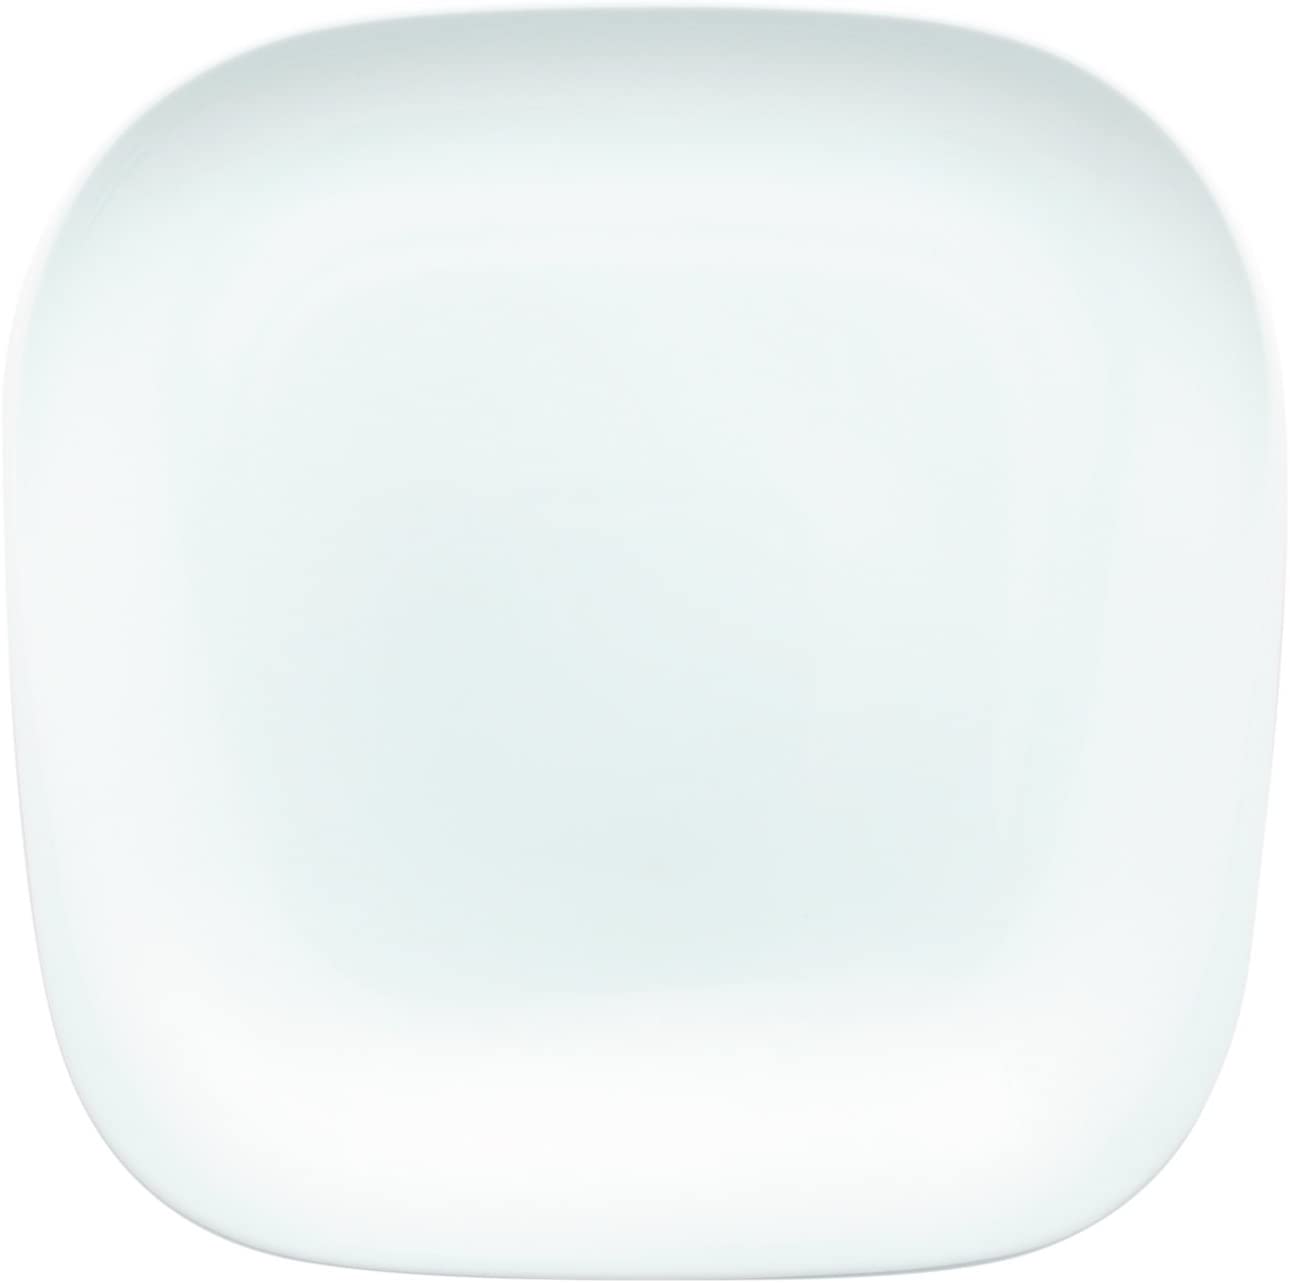 Kahla 153473A90015C Dinner plate Elixyr, 28 cm, white, 6 pieces